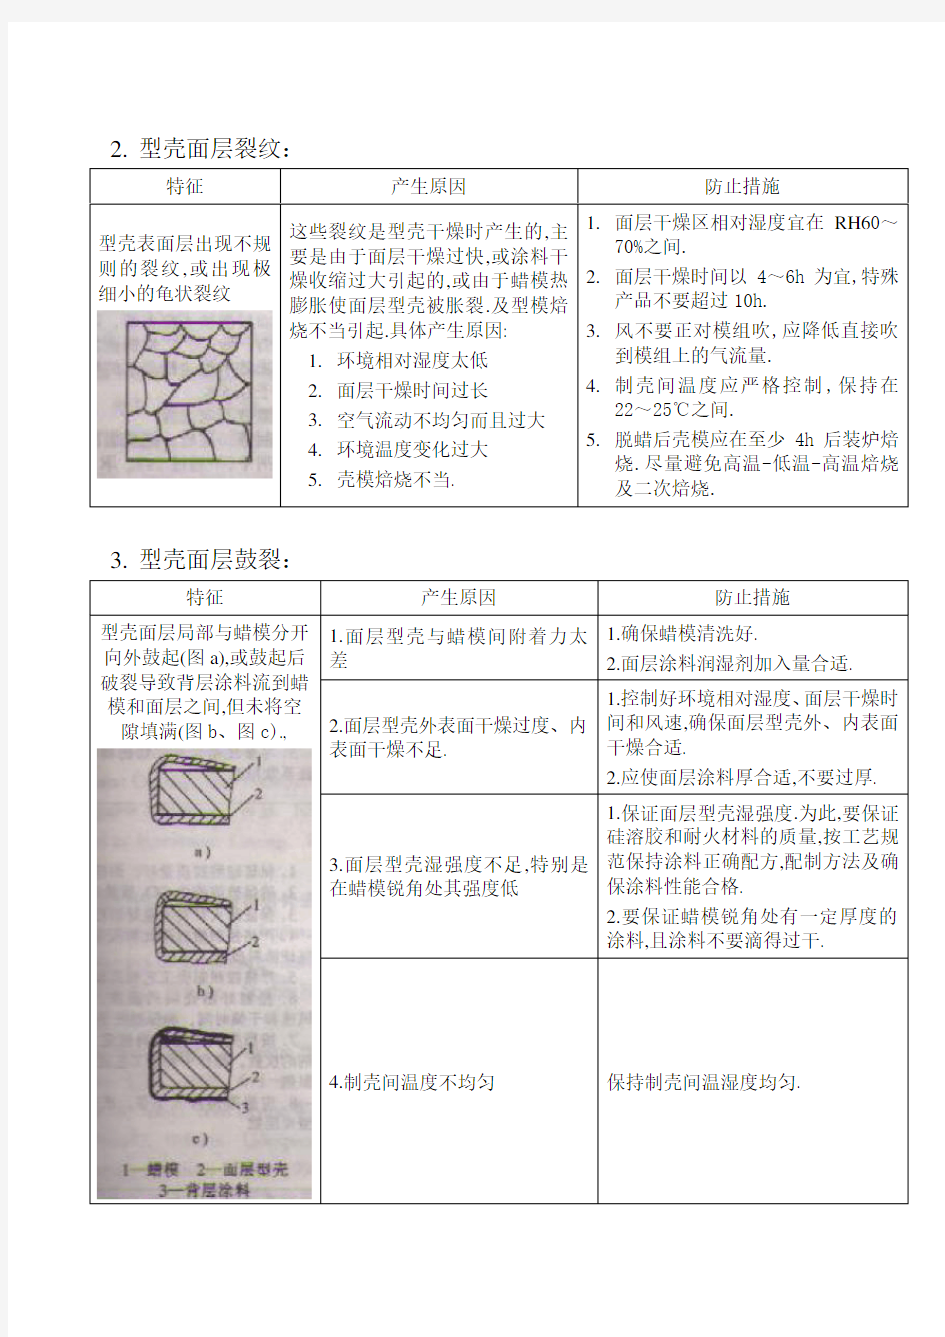 硅溶胶型壳常见缺陷及防止措施